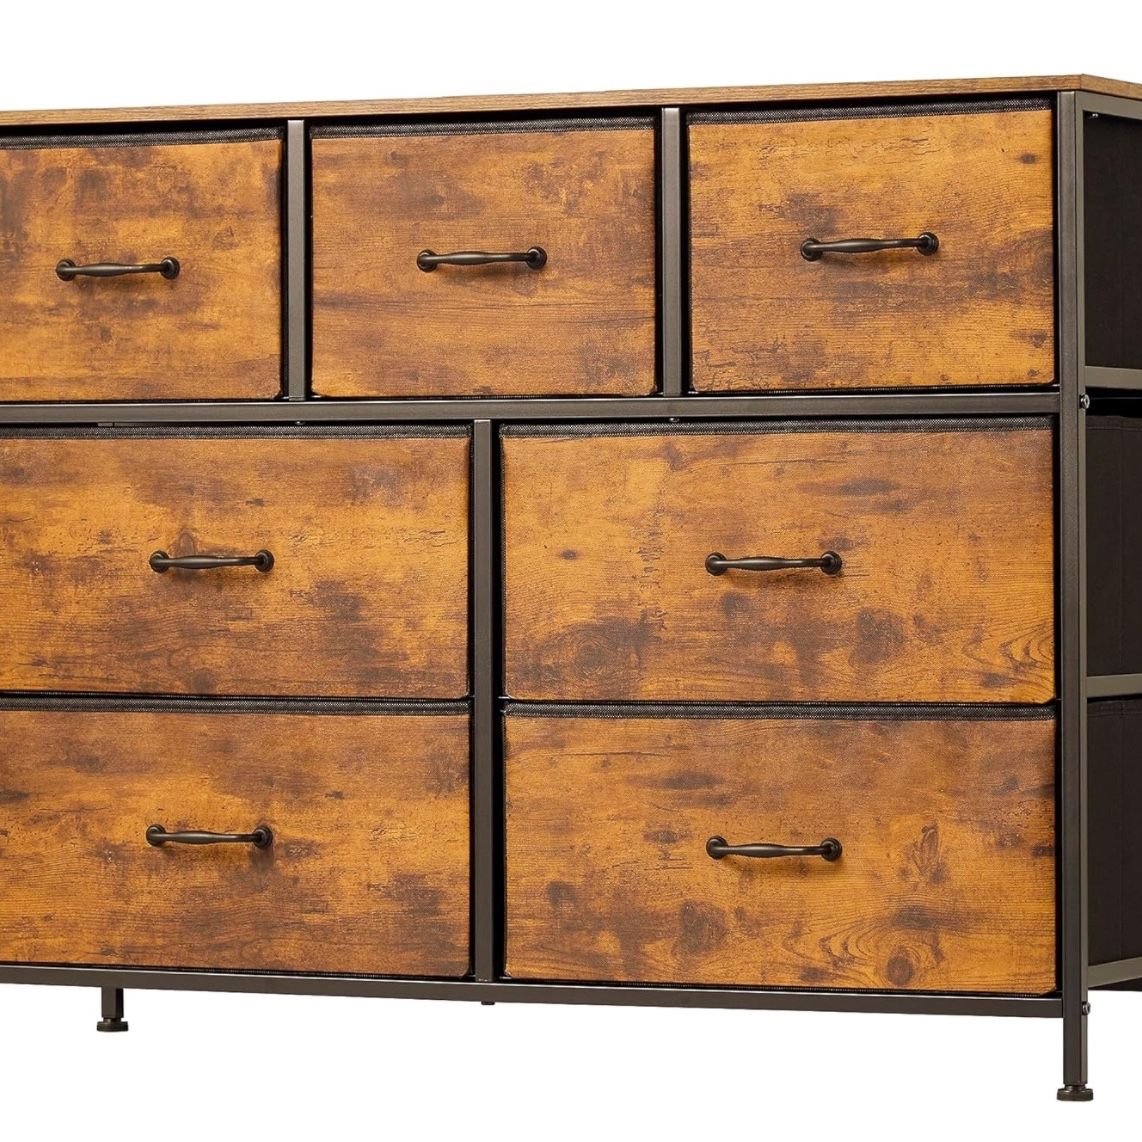  7-Drawer Dresser, Tall Storage Organizer with Wooden Top, TV Stand Closet Organizer